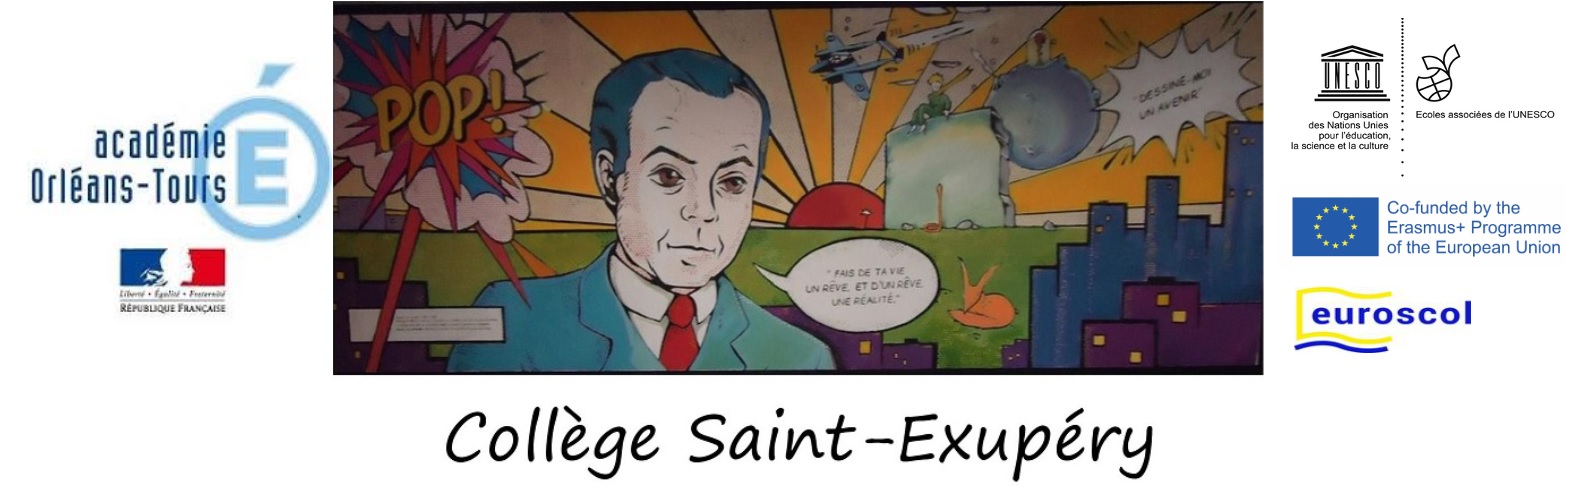 http://clg-saint-exupery-st-jean-de-braye.tice.ac-orleans-tours.fr/php5/index.php?lng=fr